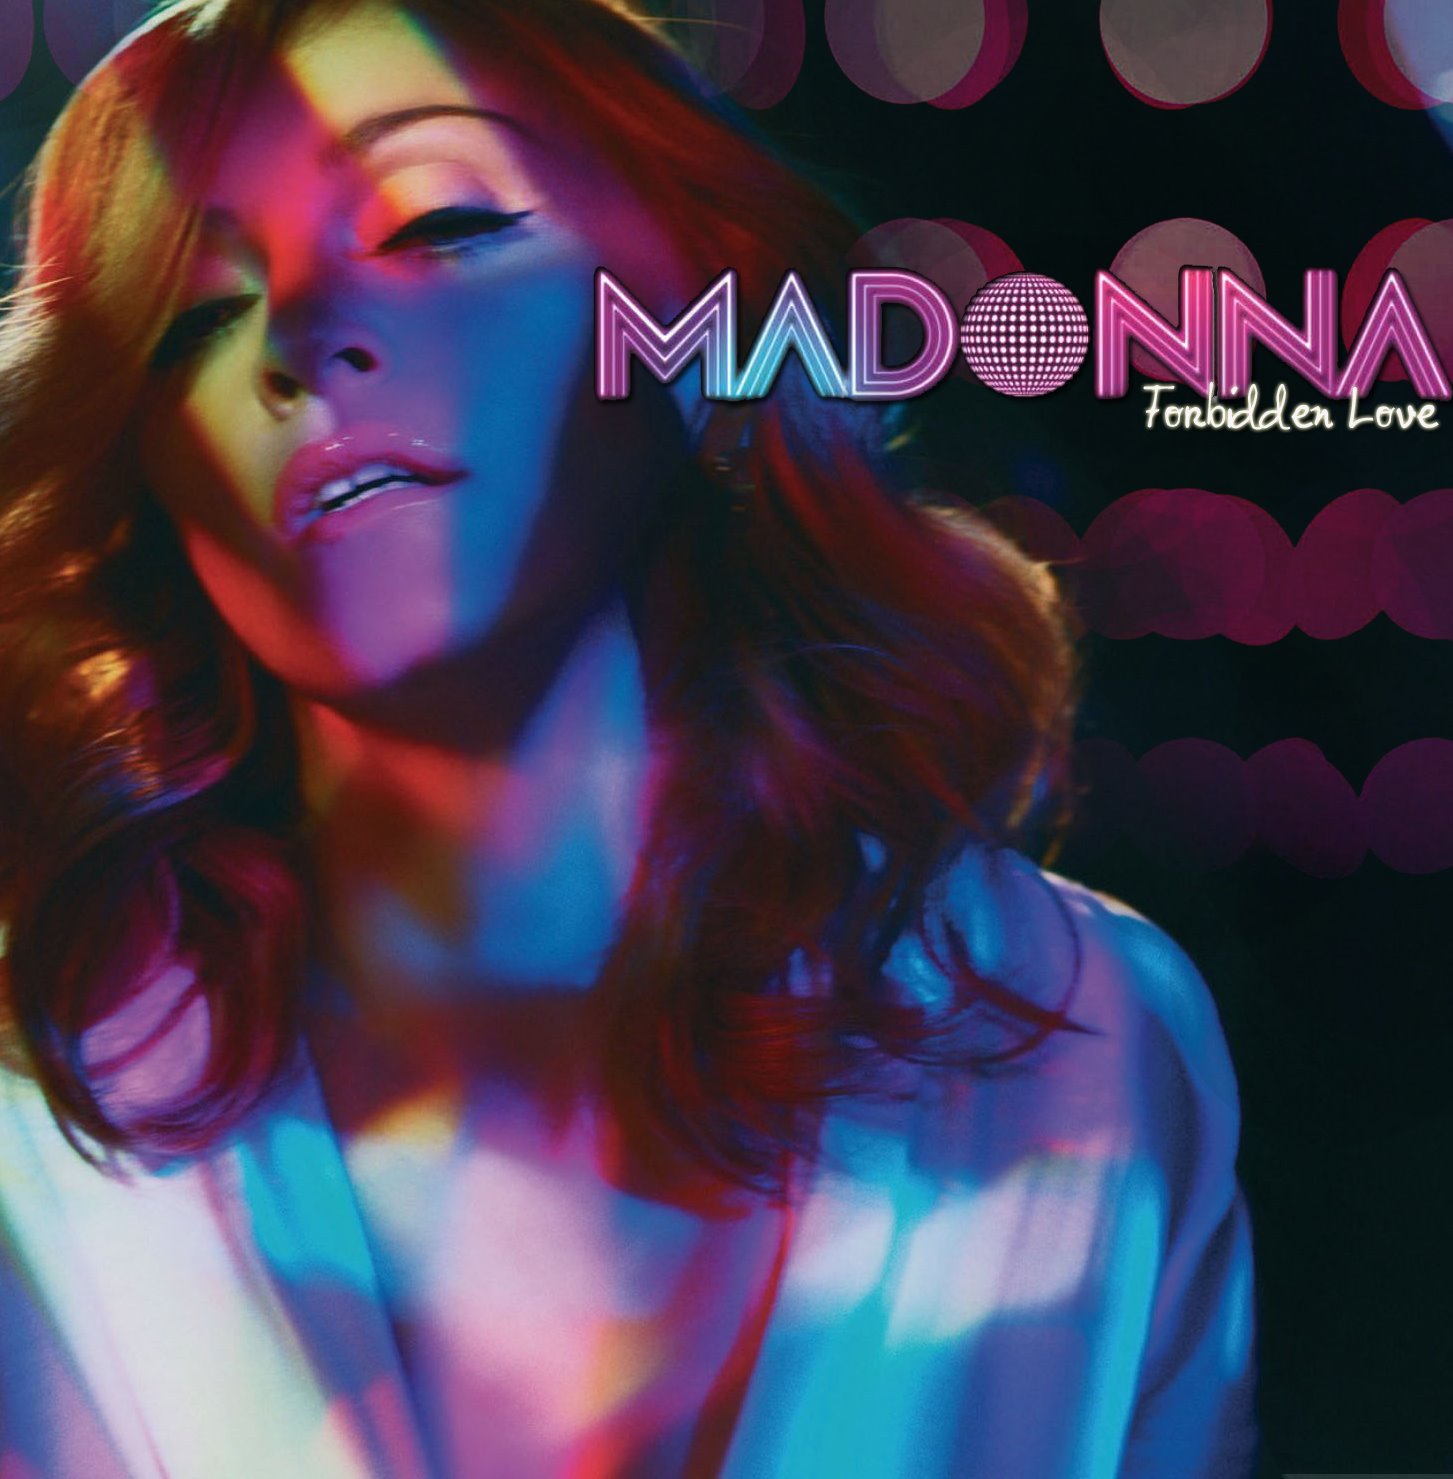 Forbidden Love (2005) (Tradução em Português) – Madonna